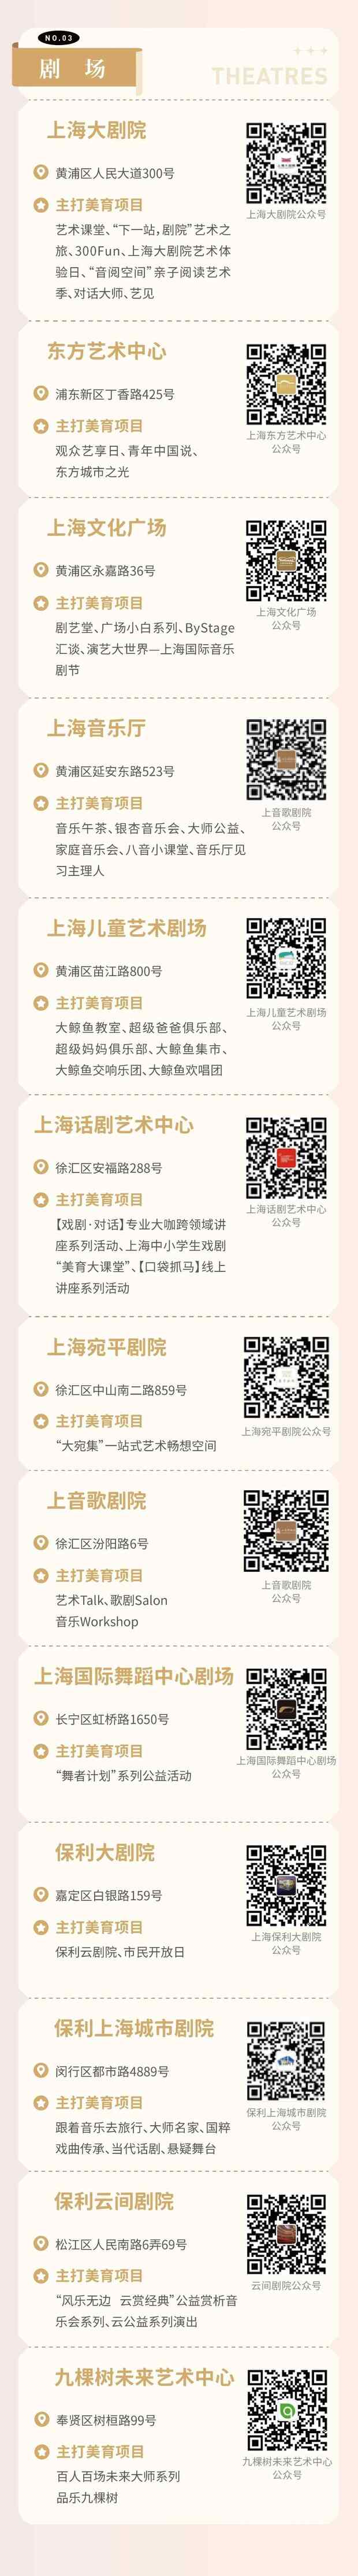 【图说上海】沪上首批70个“社会大美育”课堂名单揭晓